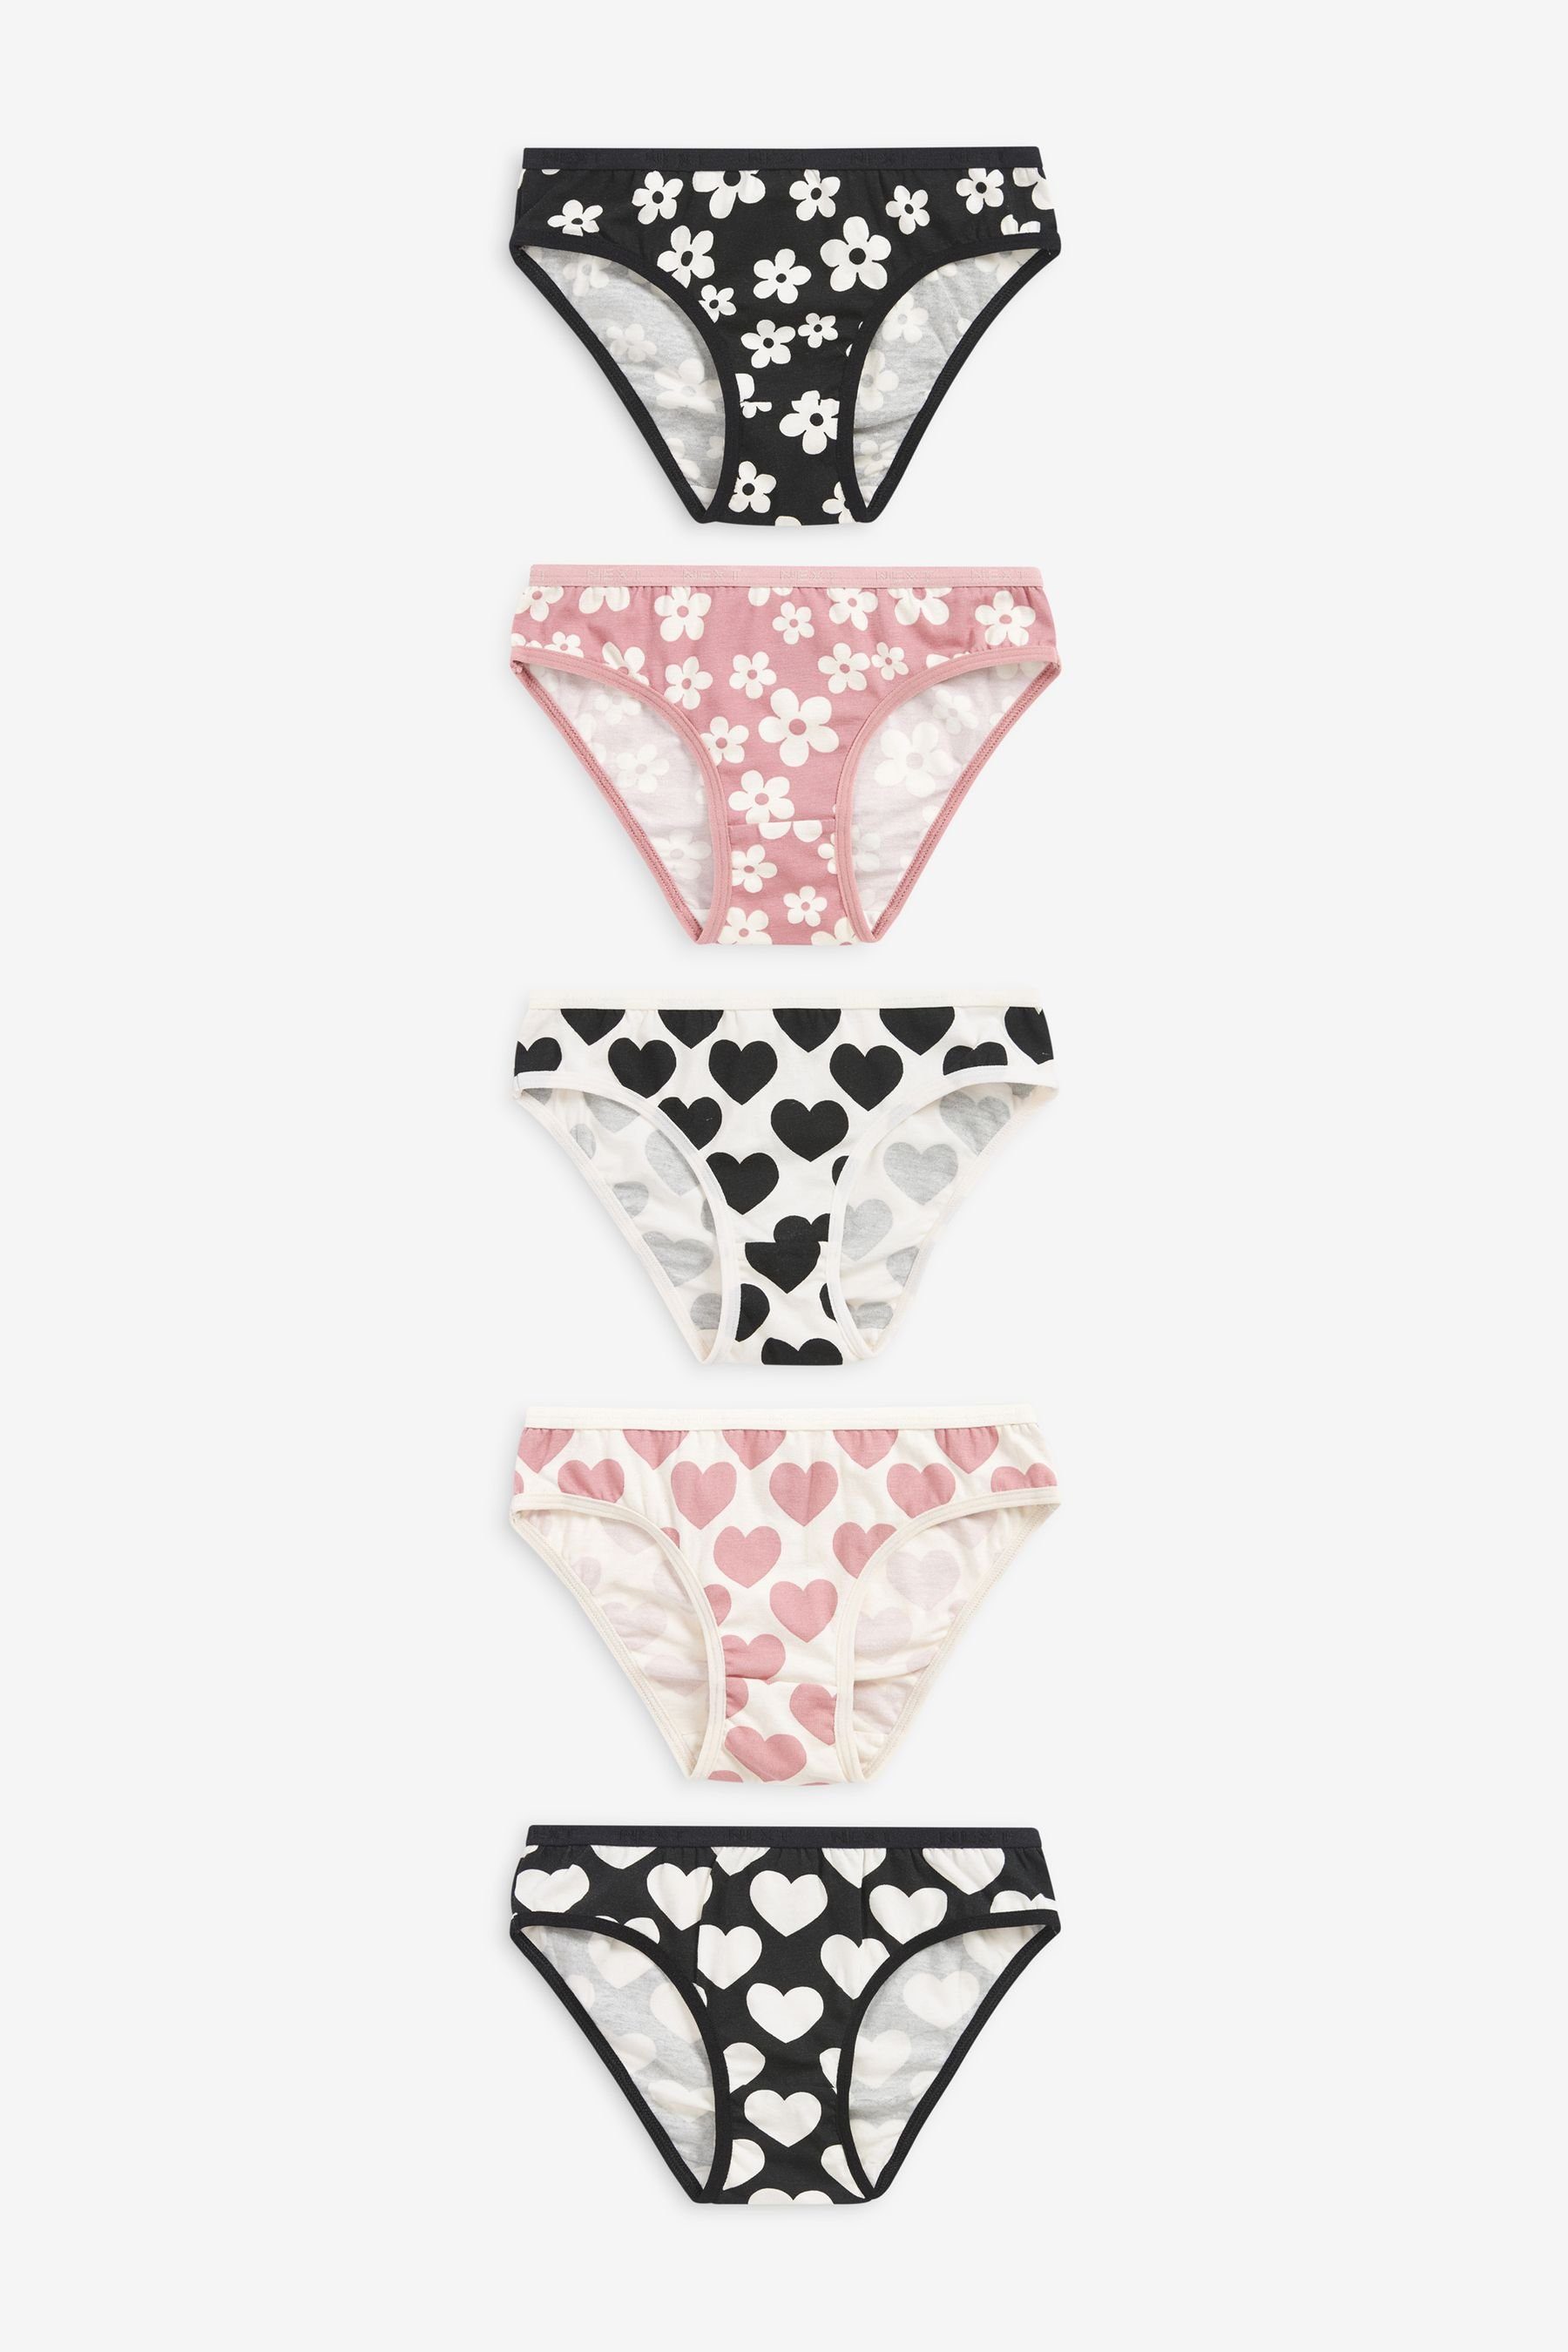 Next Bikinislip Bikini-Slips mit Punkten und Sternen, 5er-Pack (5-St) Pink/Black/White Heart